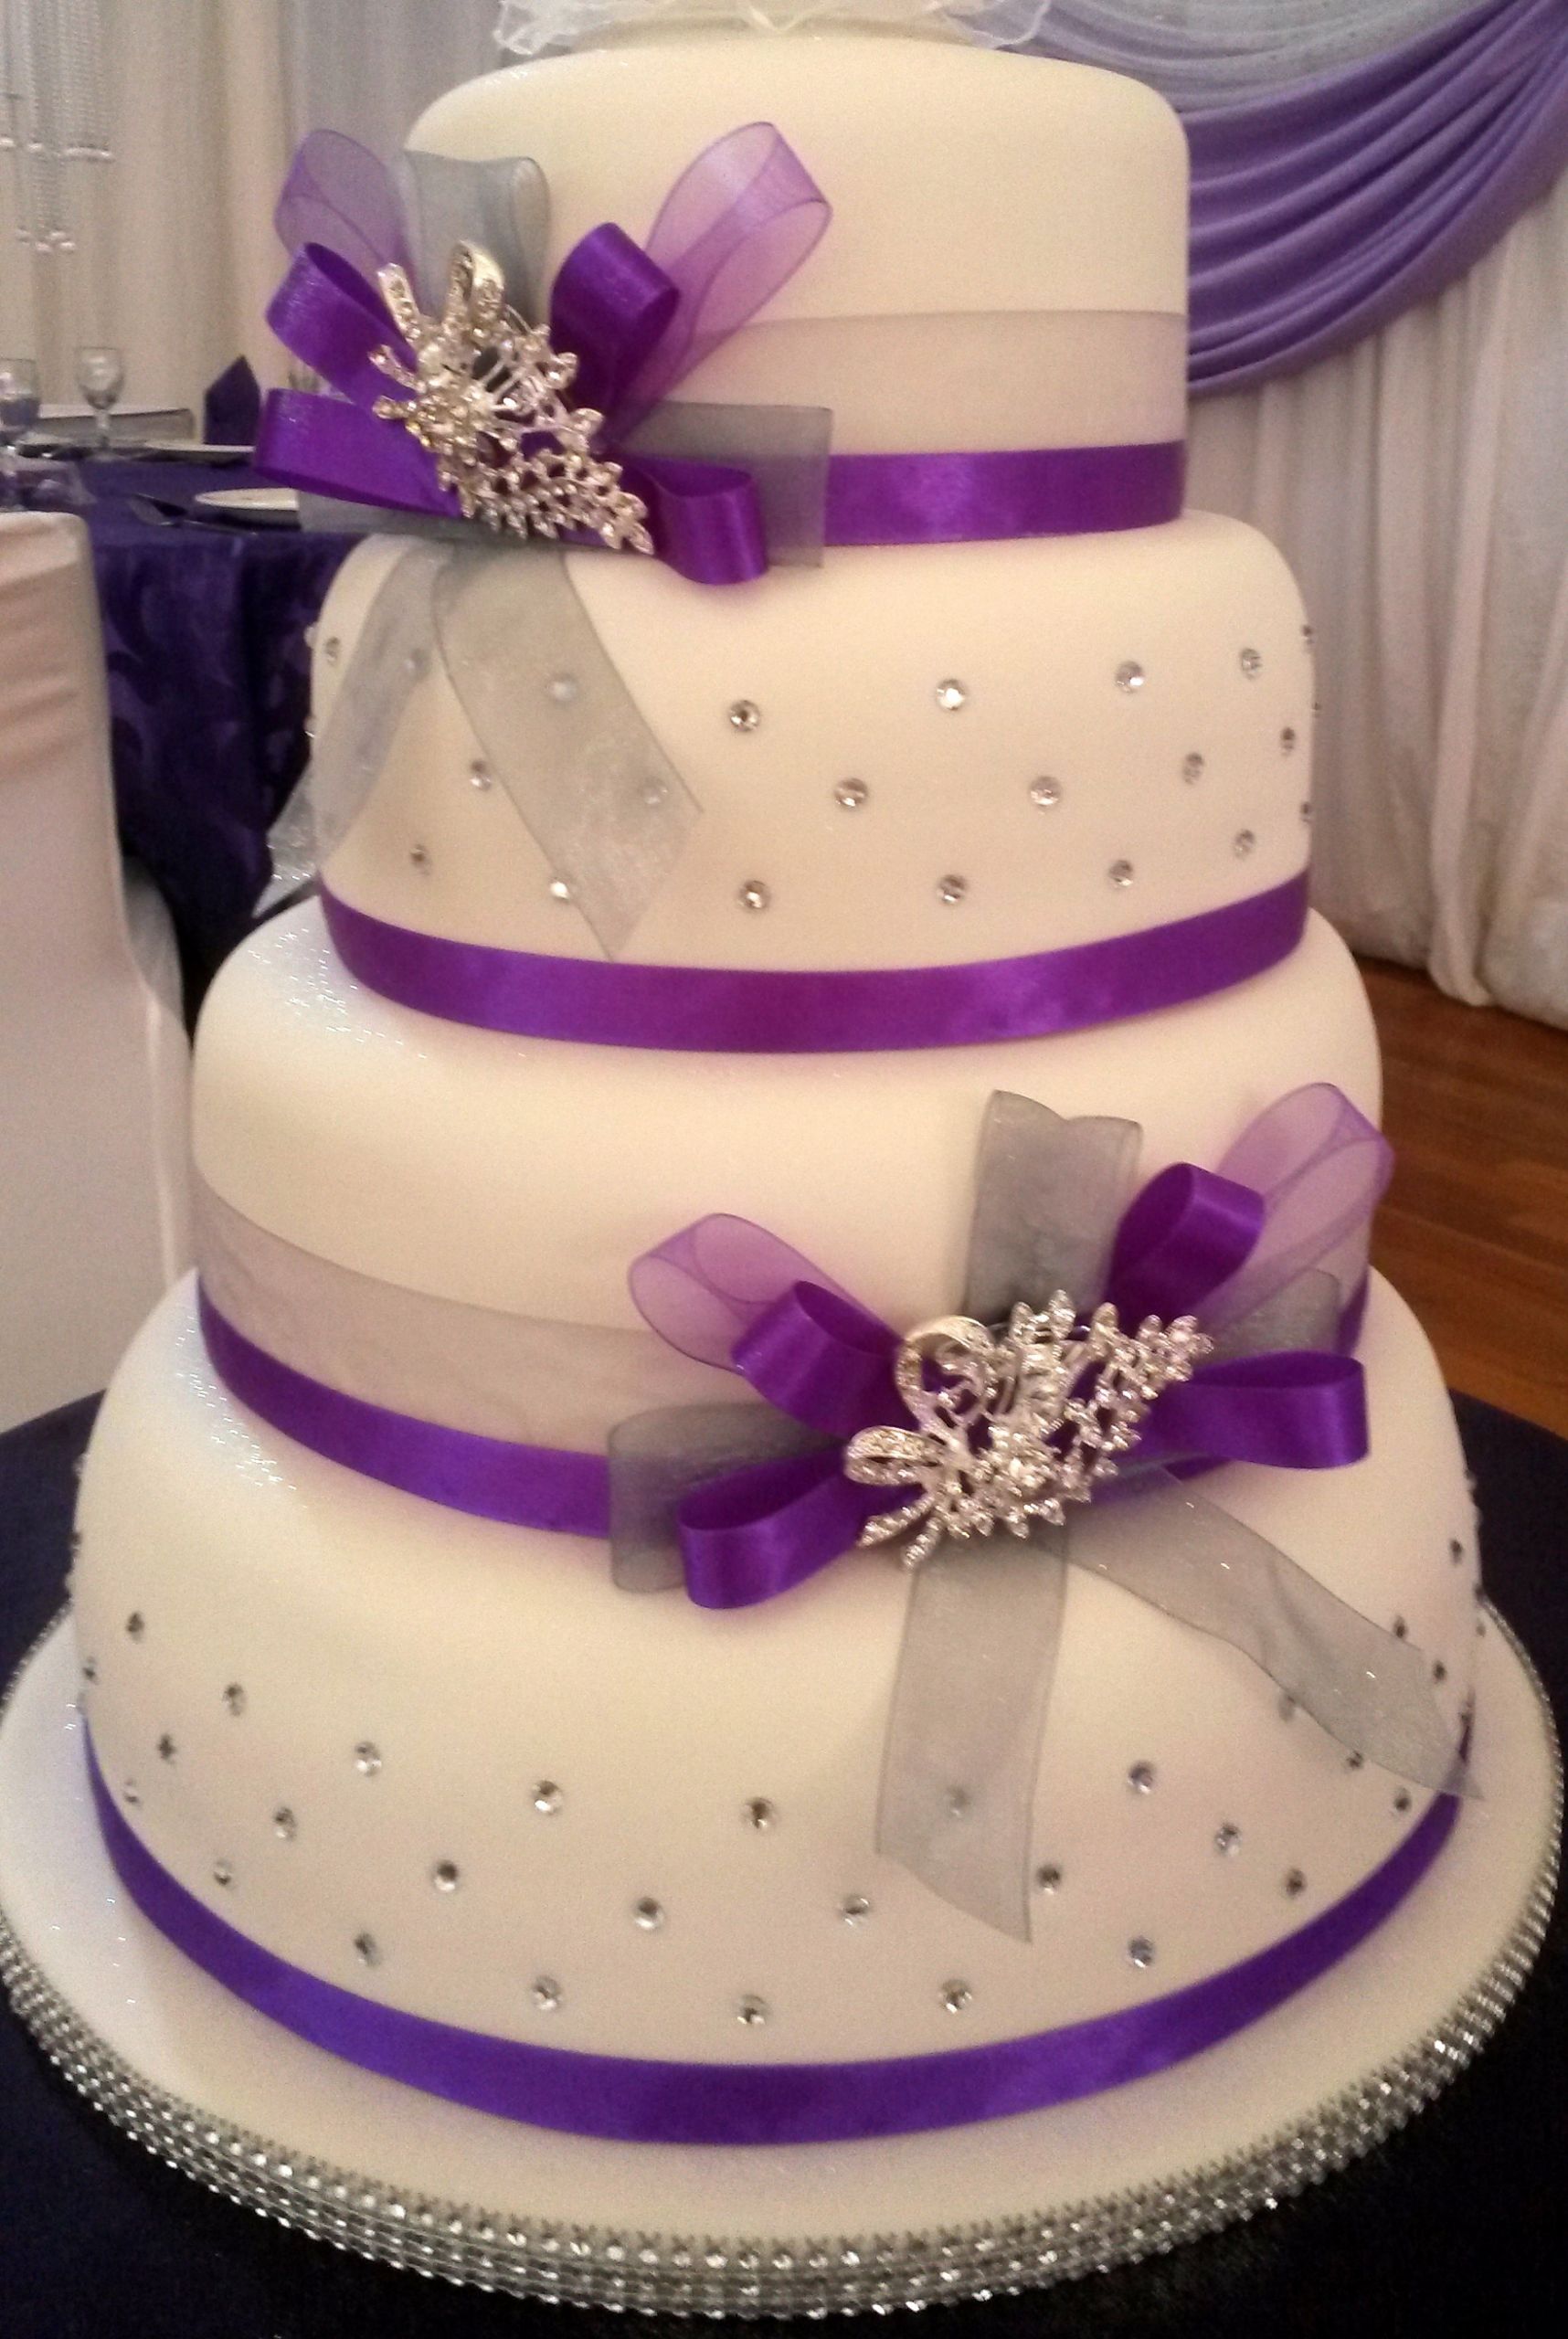 Exquisite Wedding Cakes
 Wedding Cakes